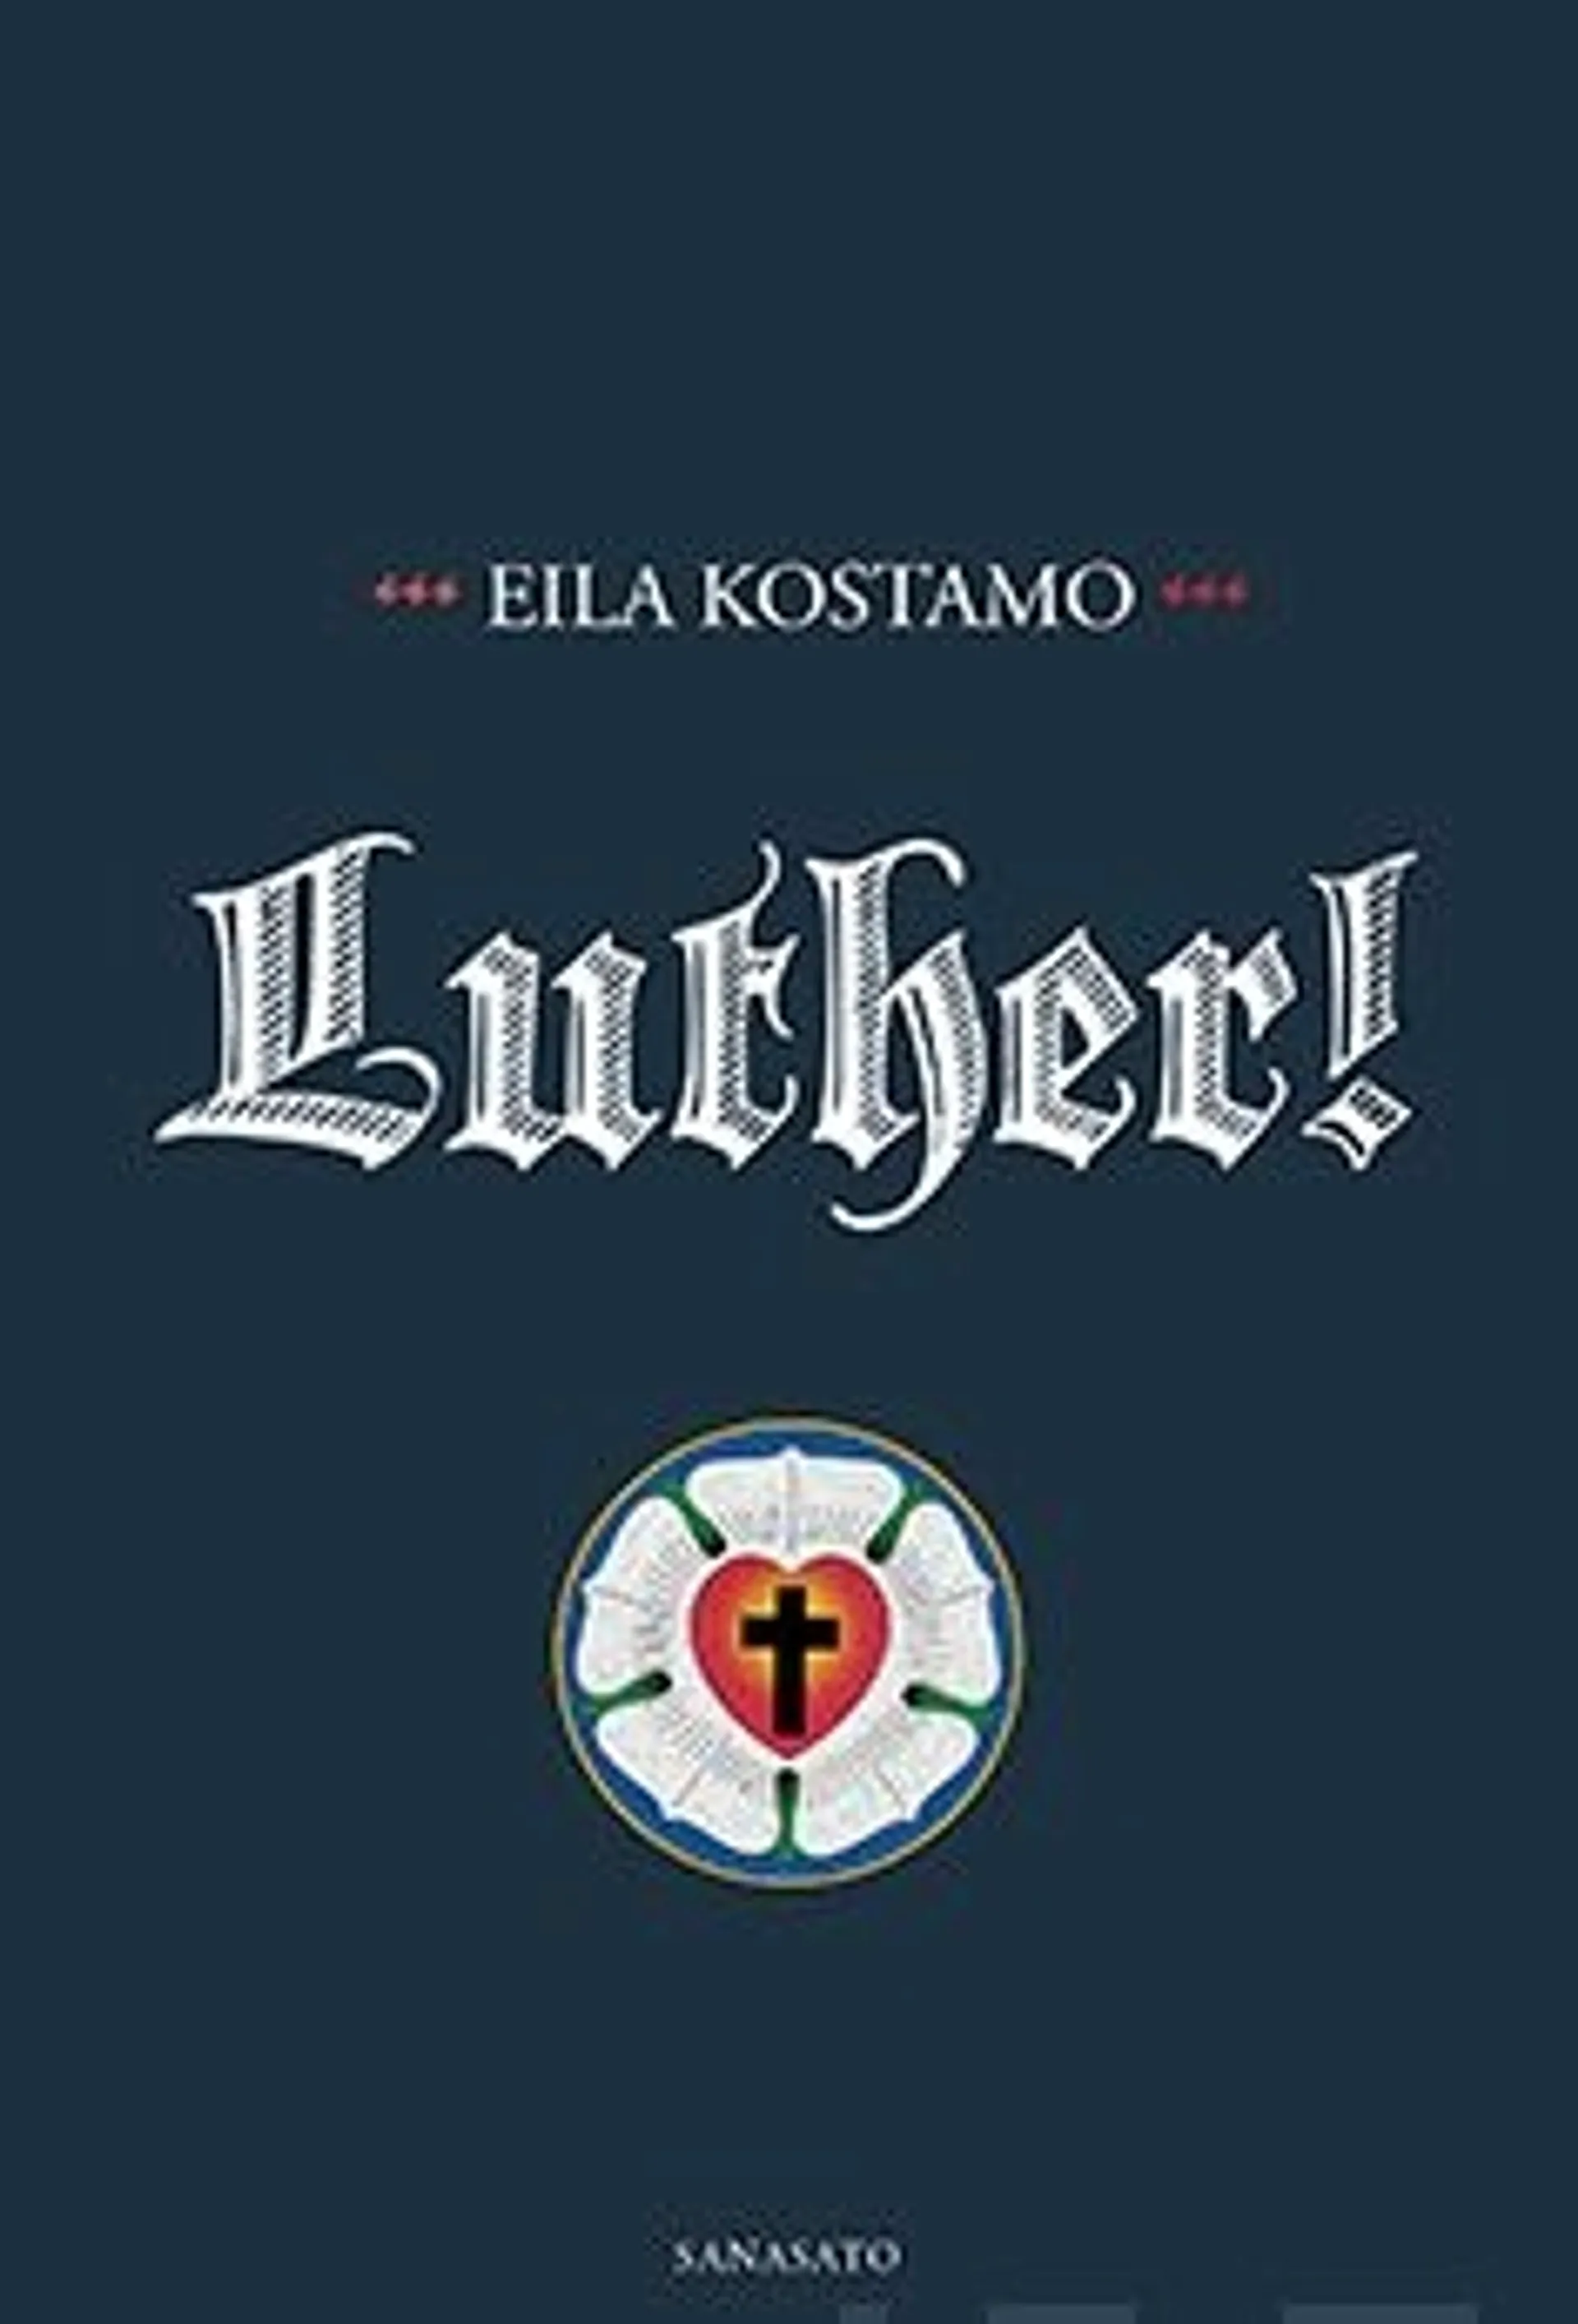 Kostamo, Luther!